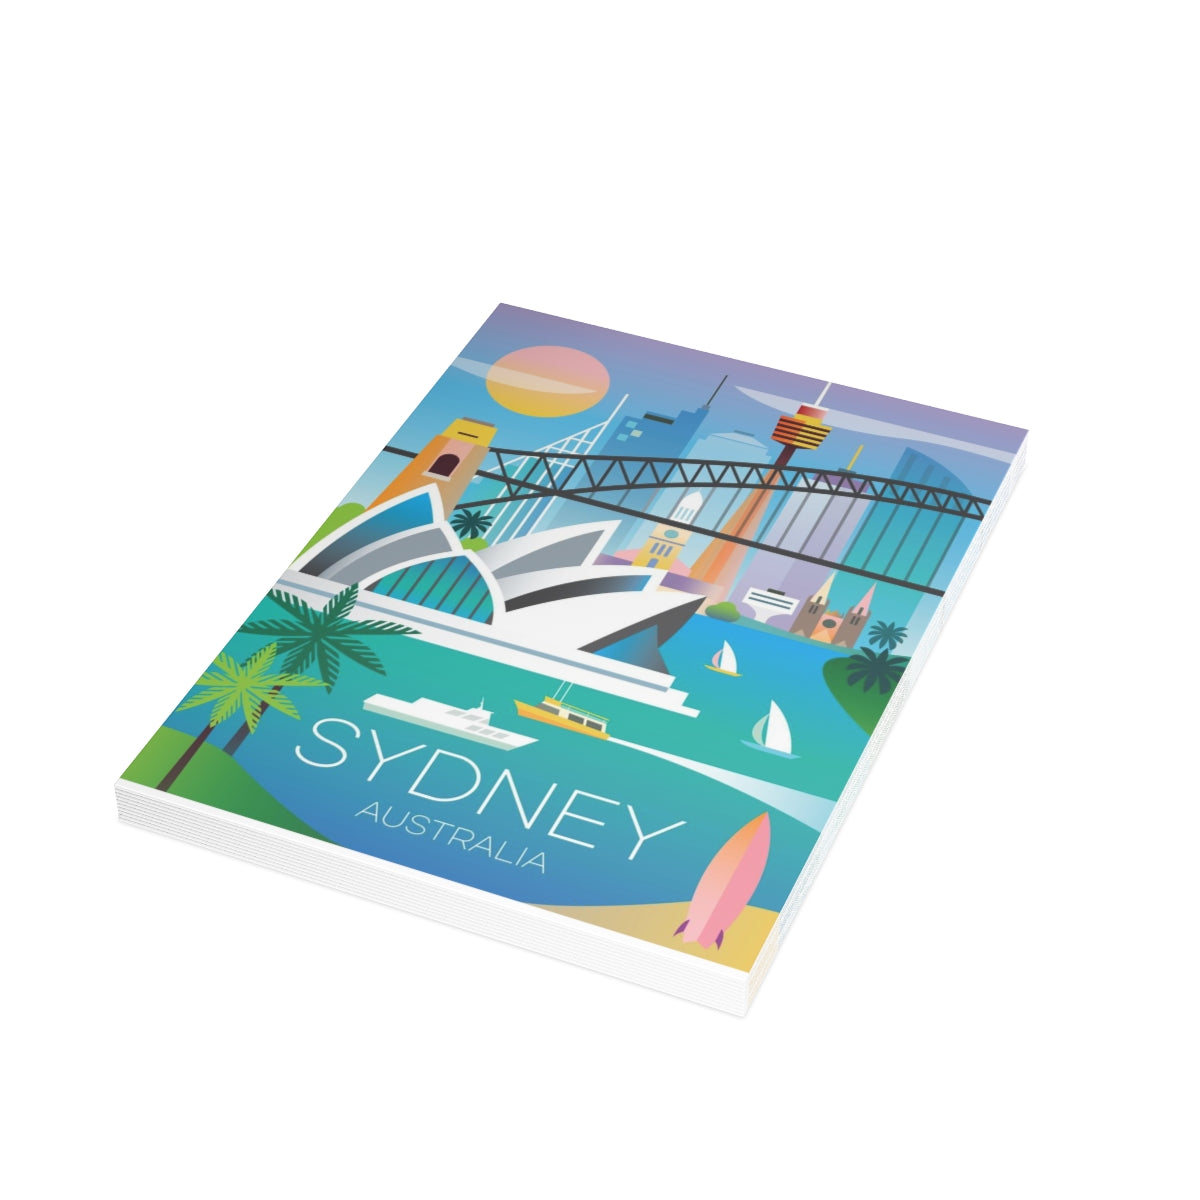 Cartes mates pliées Sydney + enveloppes (10 pièces)